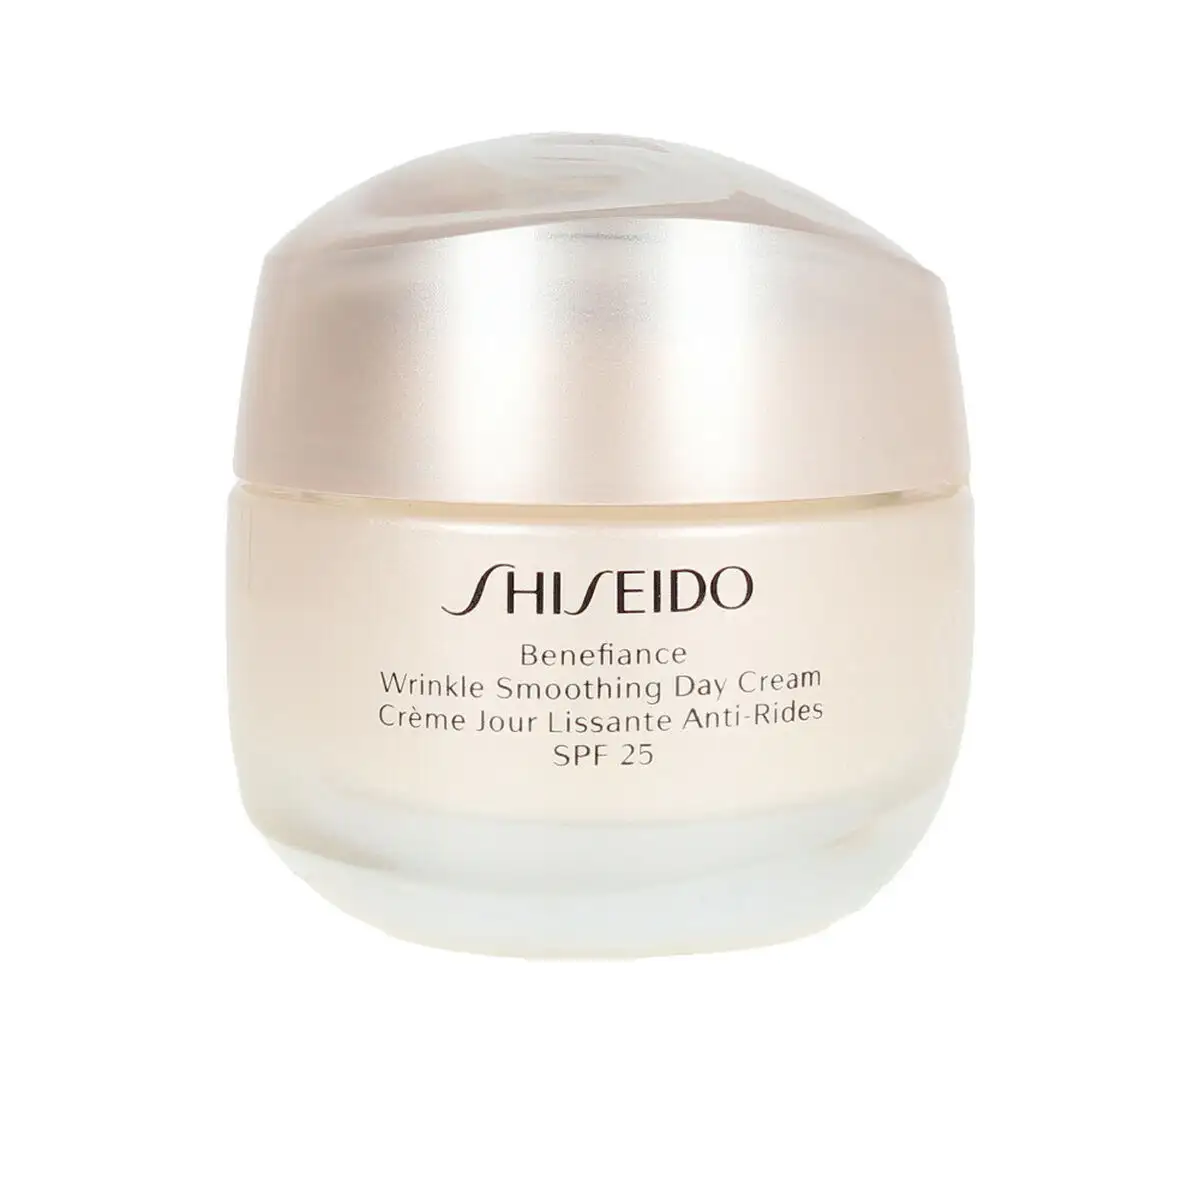 Gel anti age de jour shiseido benefiance wrinkle smoothing 50 ml spf 25_9872. DIAYTAR SENEGAL - L'Art de Choisir, l'Art de Se Distinquer. Naviguez à travers notre catalogue et choisissez des produits qui ajoutent une note d'élégance à votre style unique.